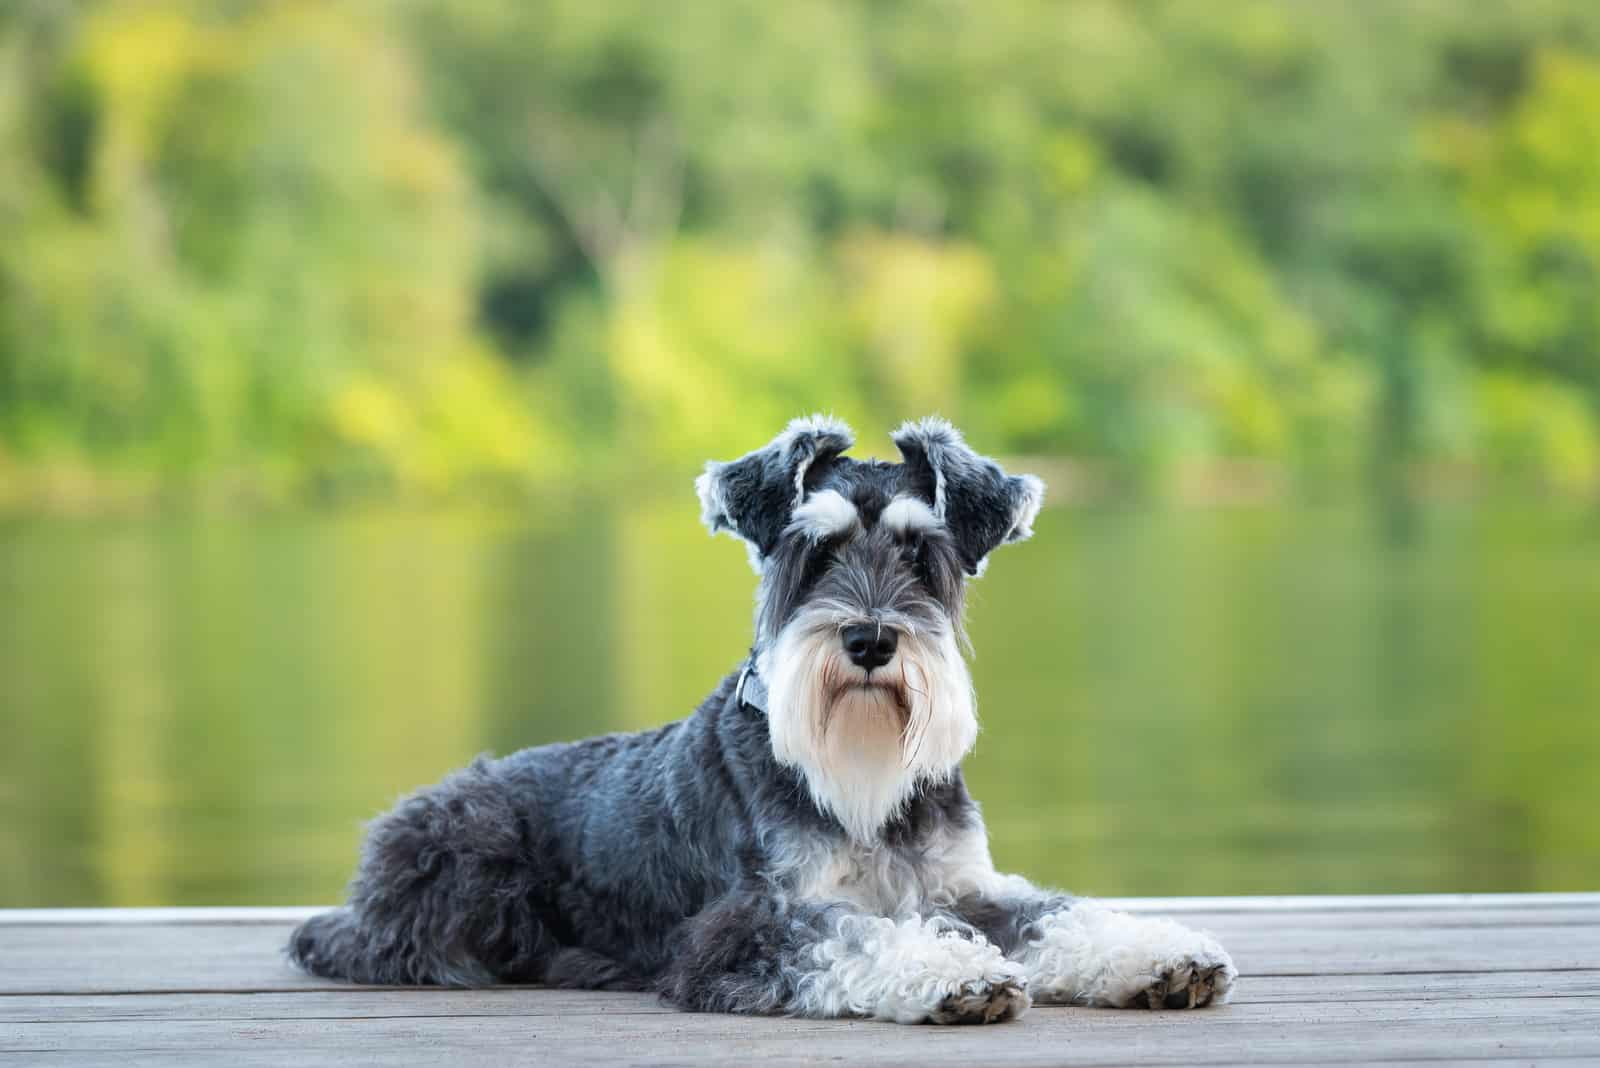 Miniature Schnauzer sitting on deck by lake